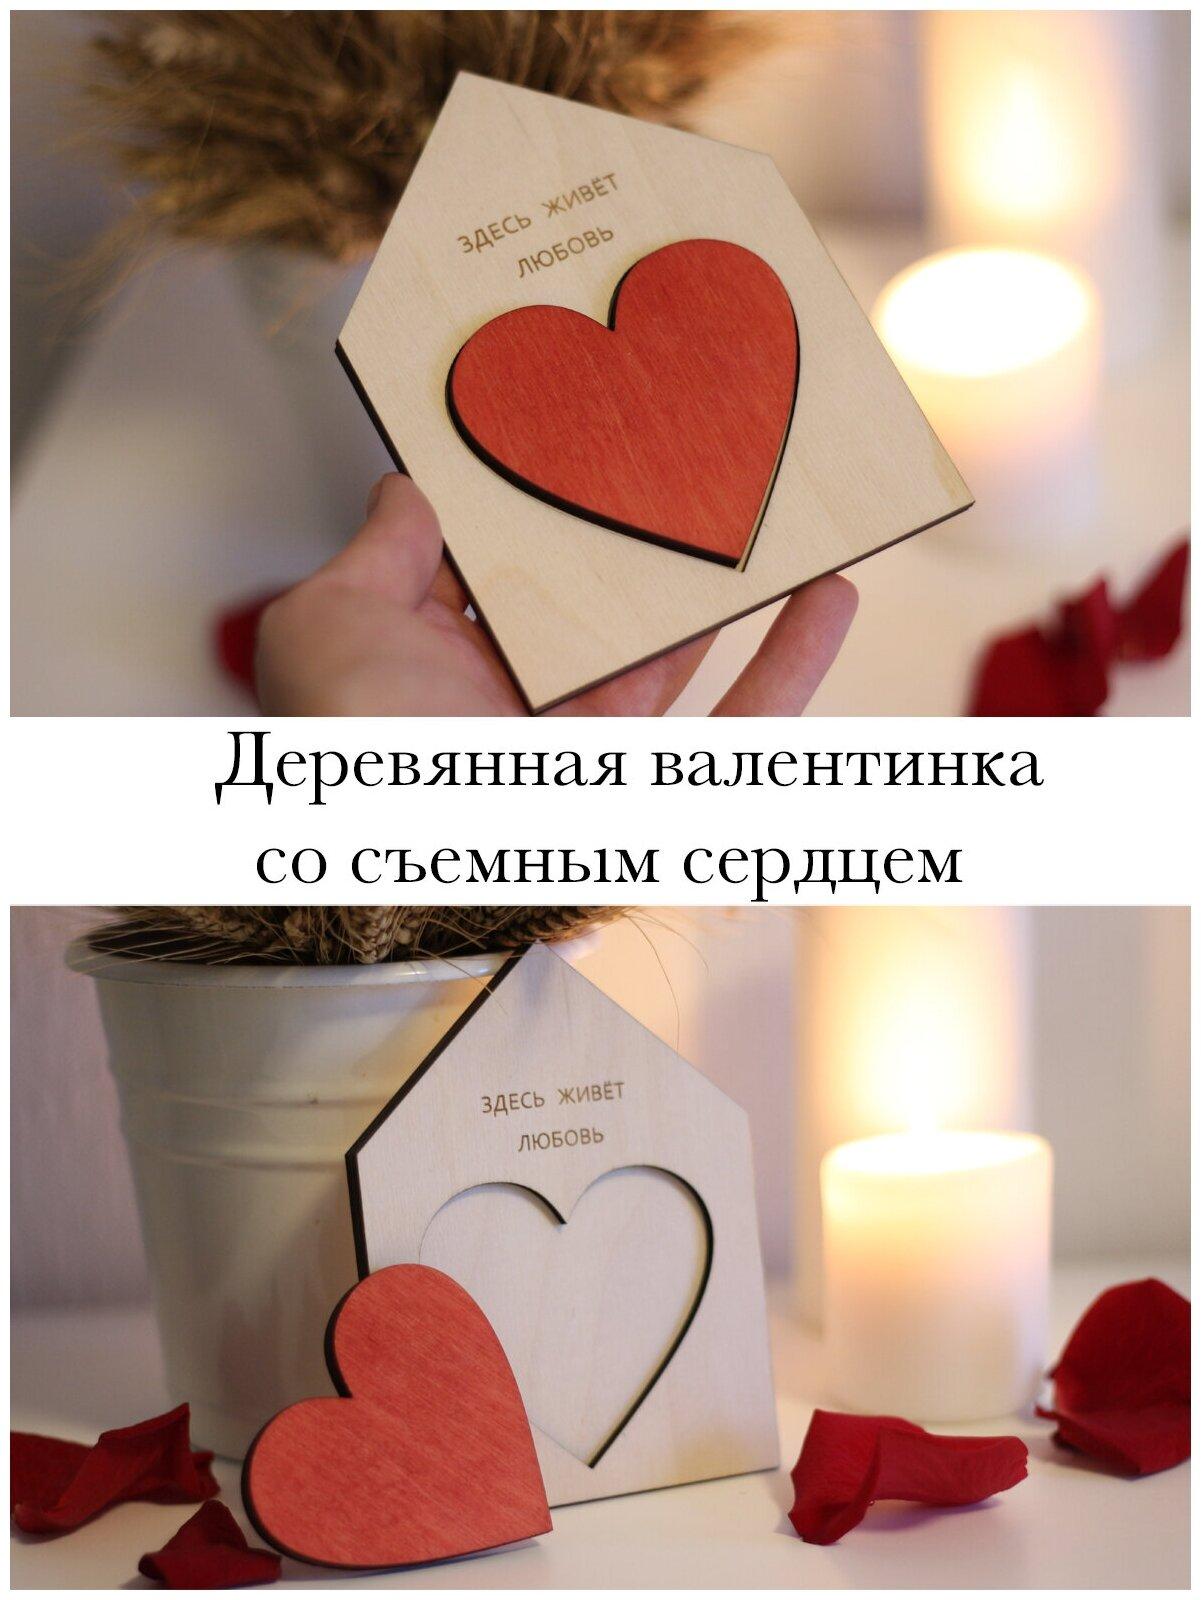 Оригинальные открытки на День Святого Валентина своими руками